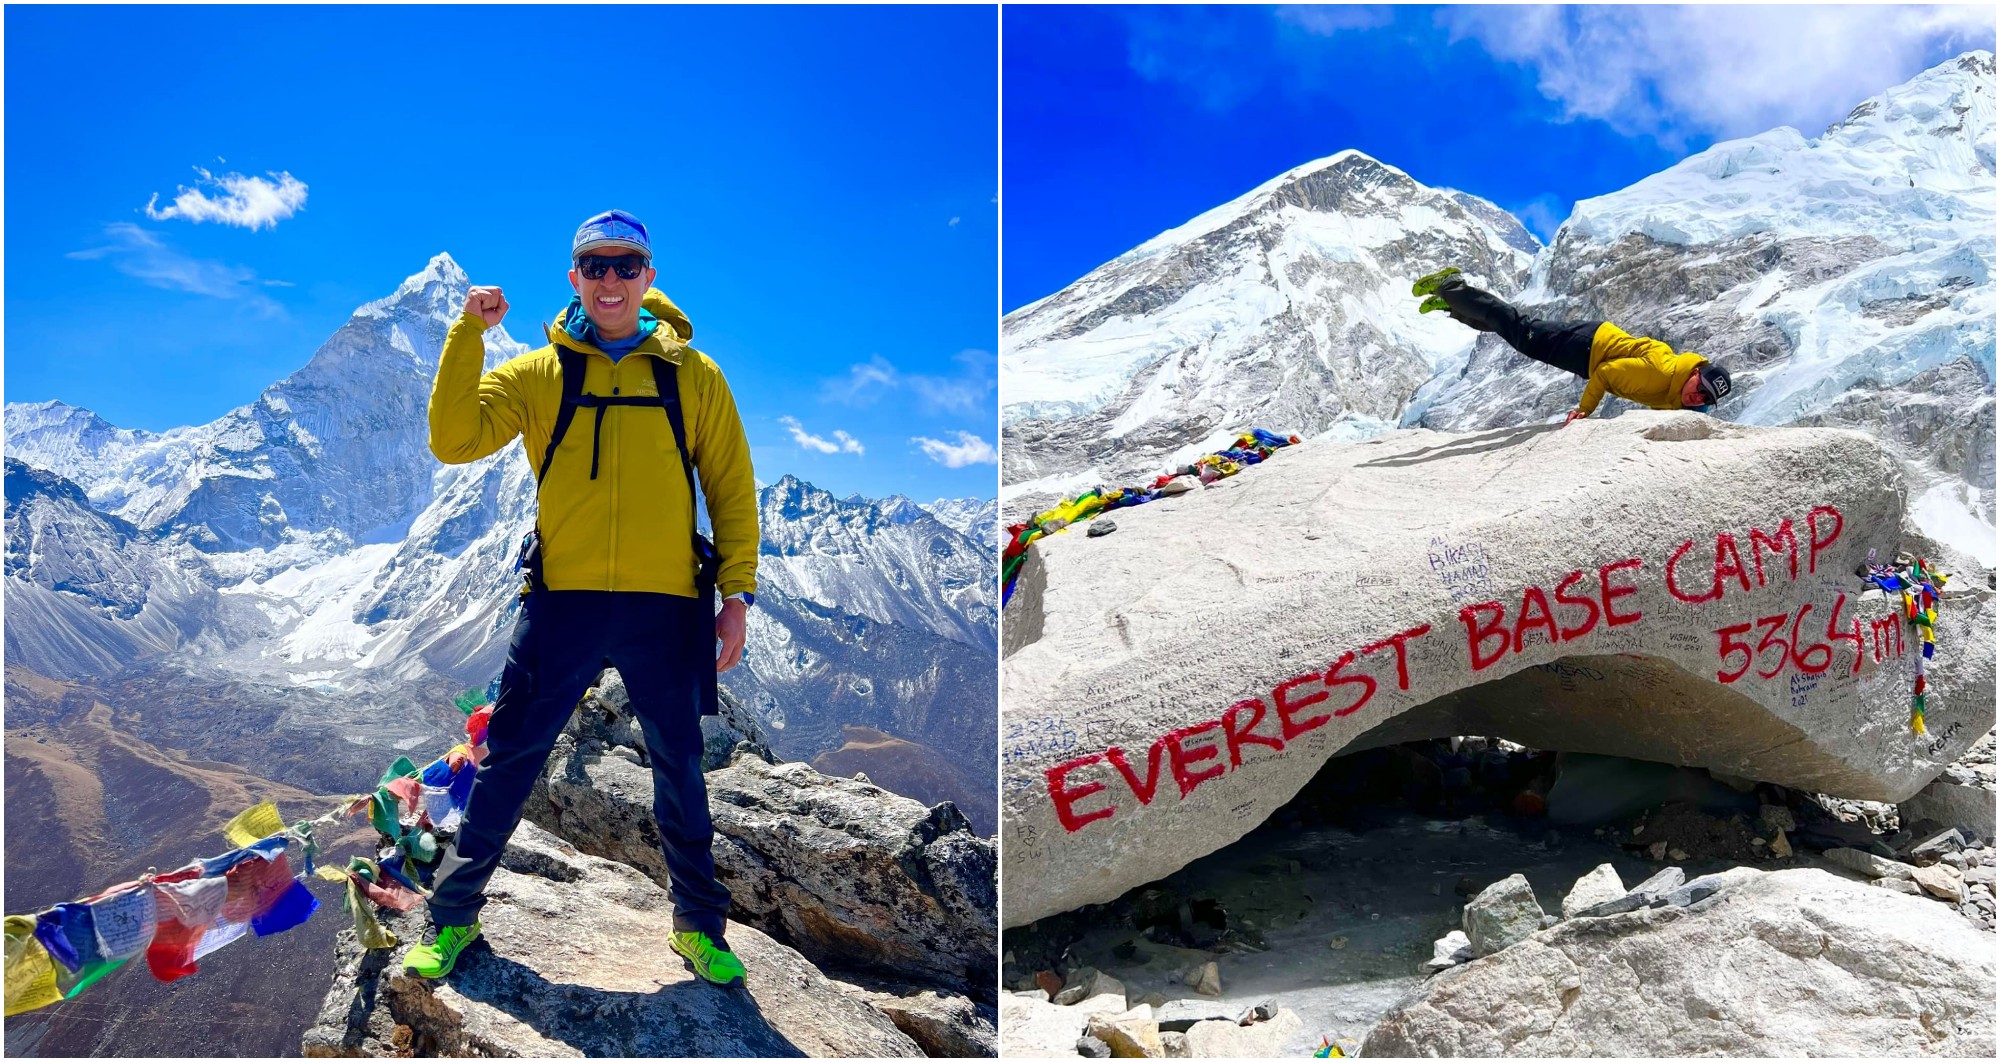 Hondureño Ronald Quintero, se encuentra en la base del Monte Everest